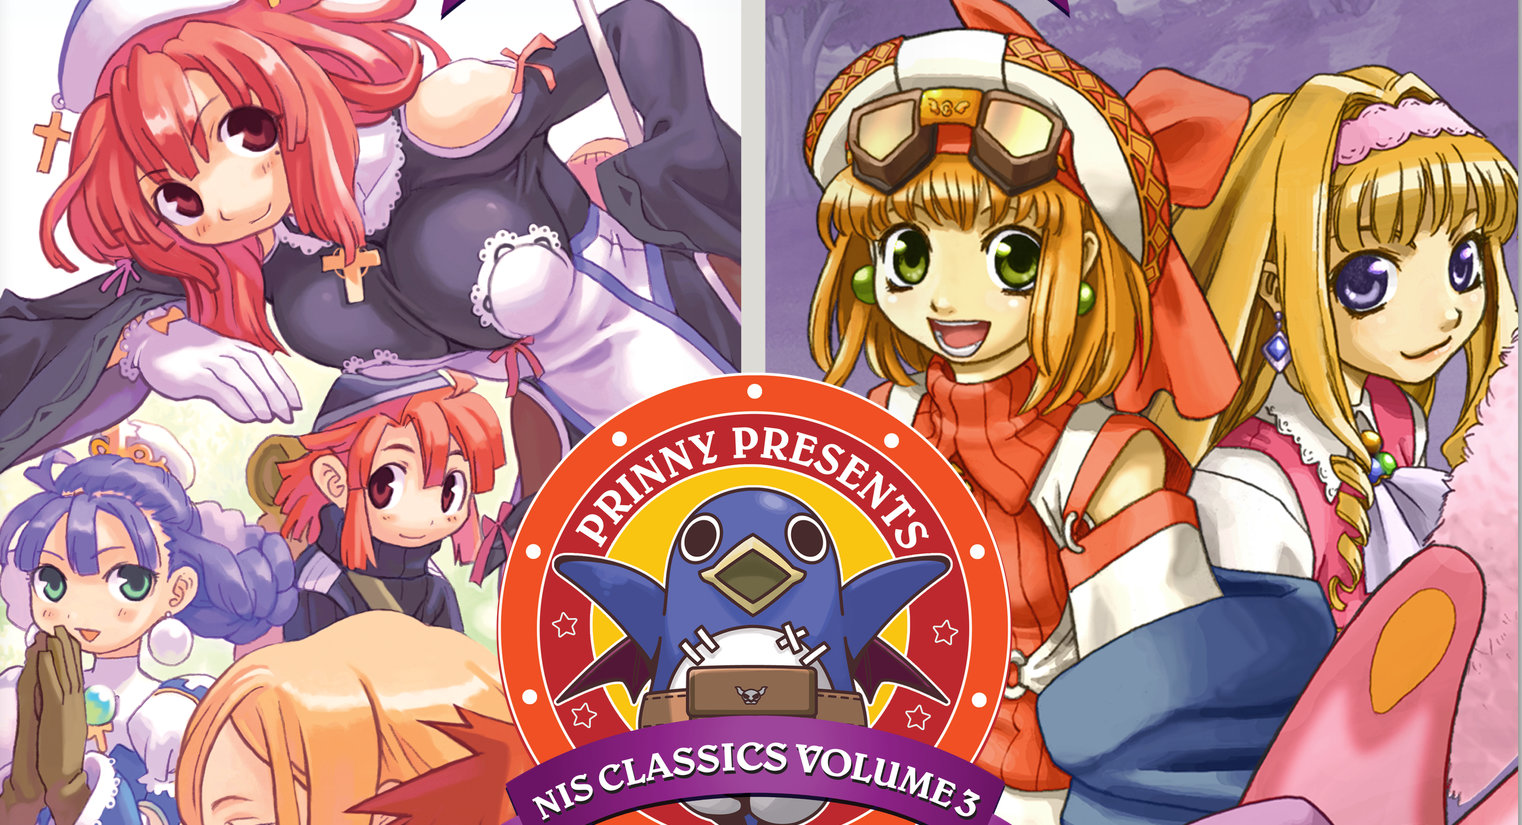 Prinny Presents NIS Classics Vol 3 Artwork 001